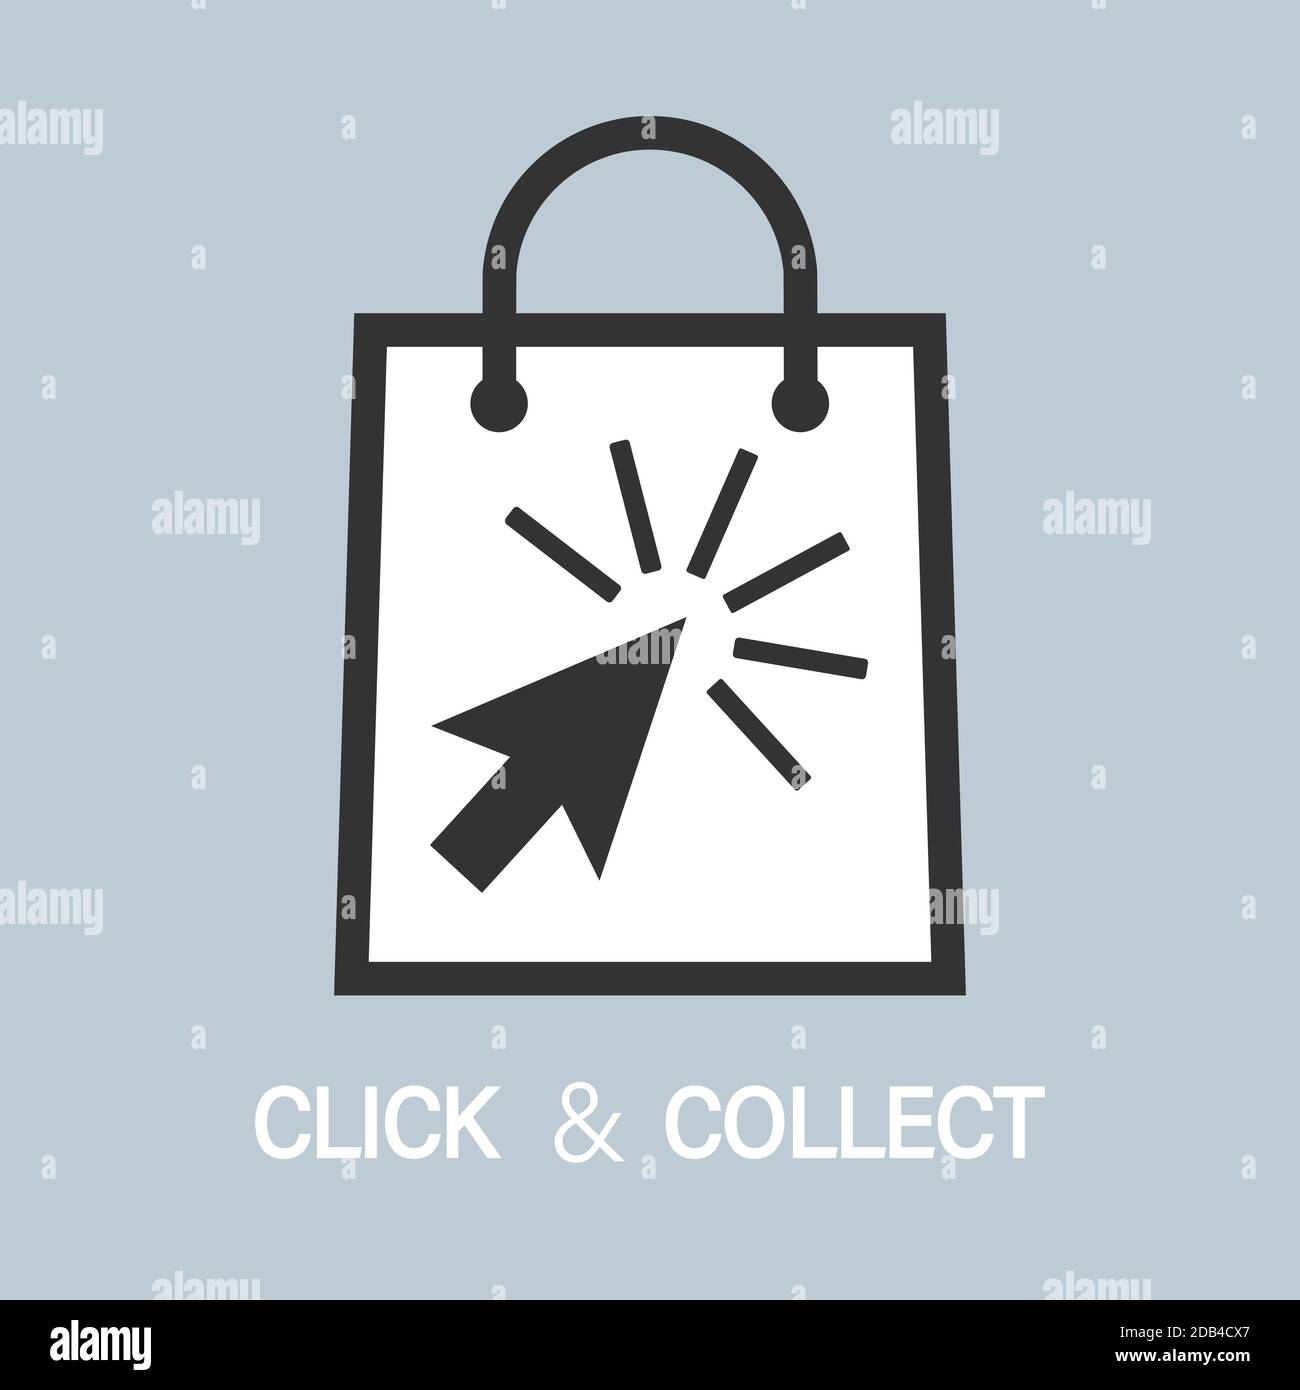 Kaufen Sie online und abholen im Geschäft, klicken und sammeln Konzept Vektor Illustration Stock Vektor